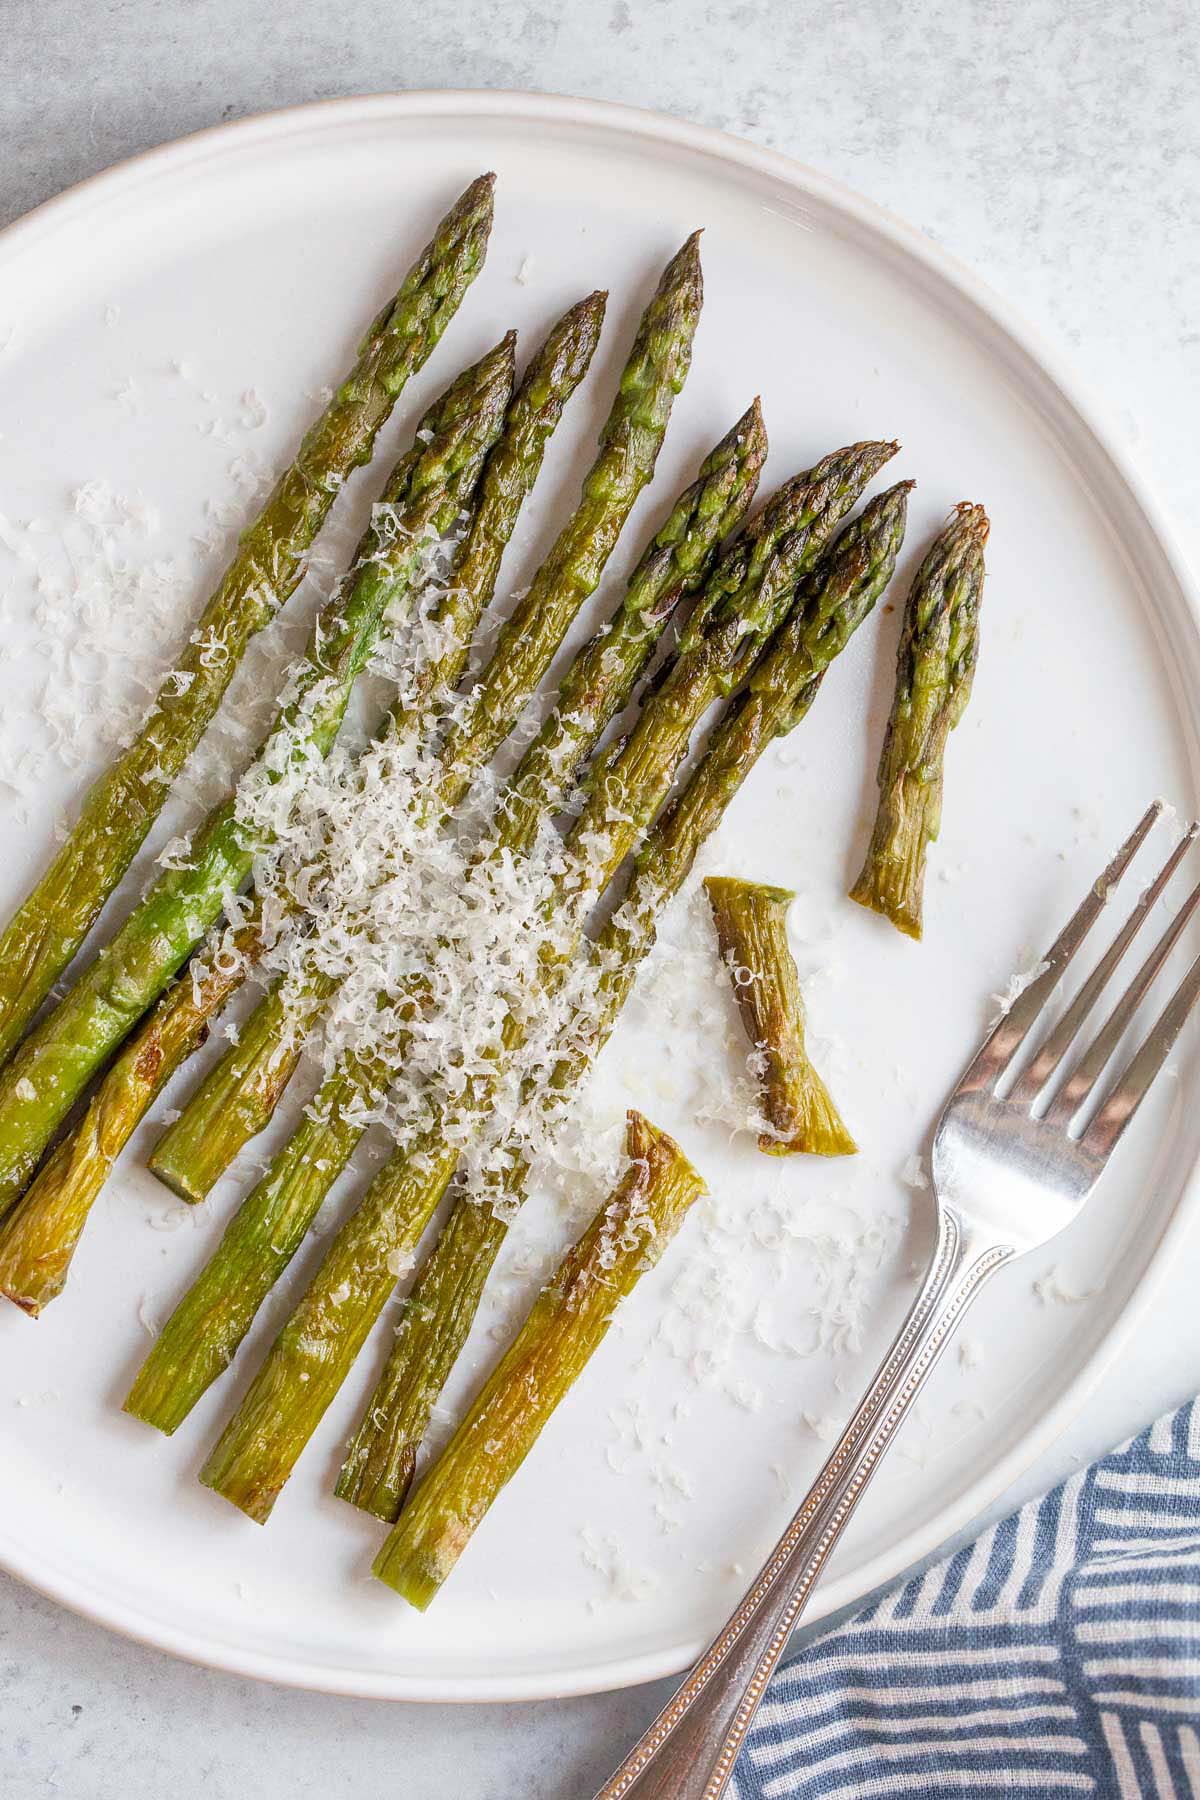 Asparagus on a plate with a fork.